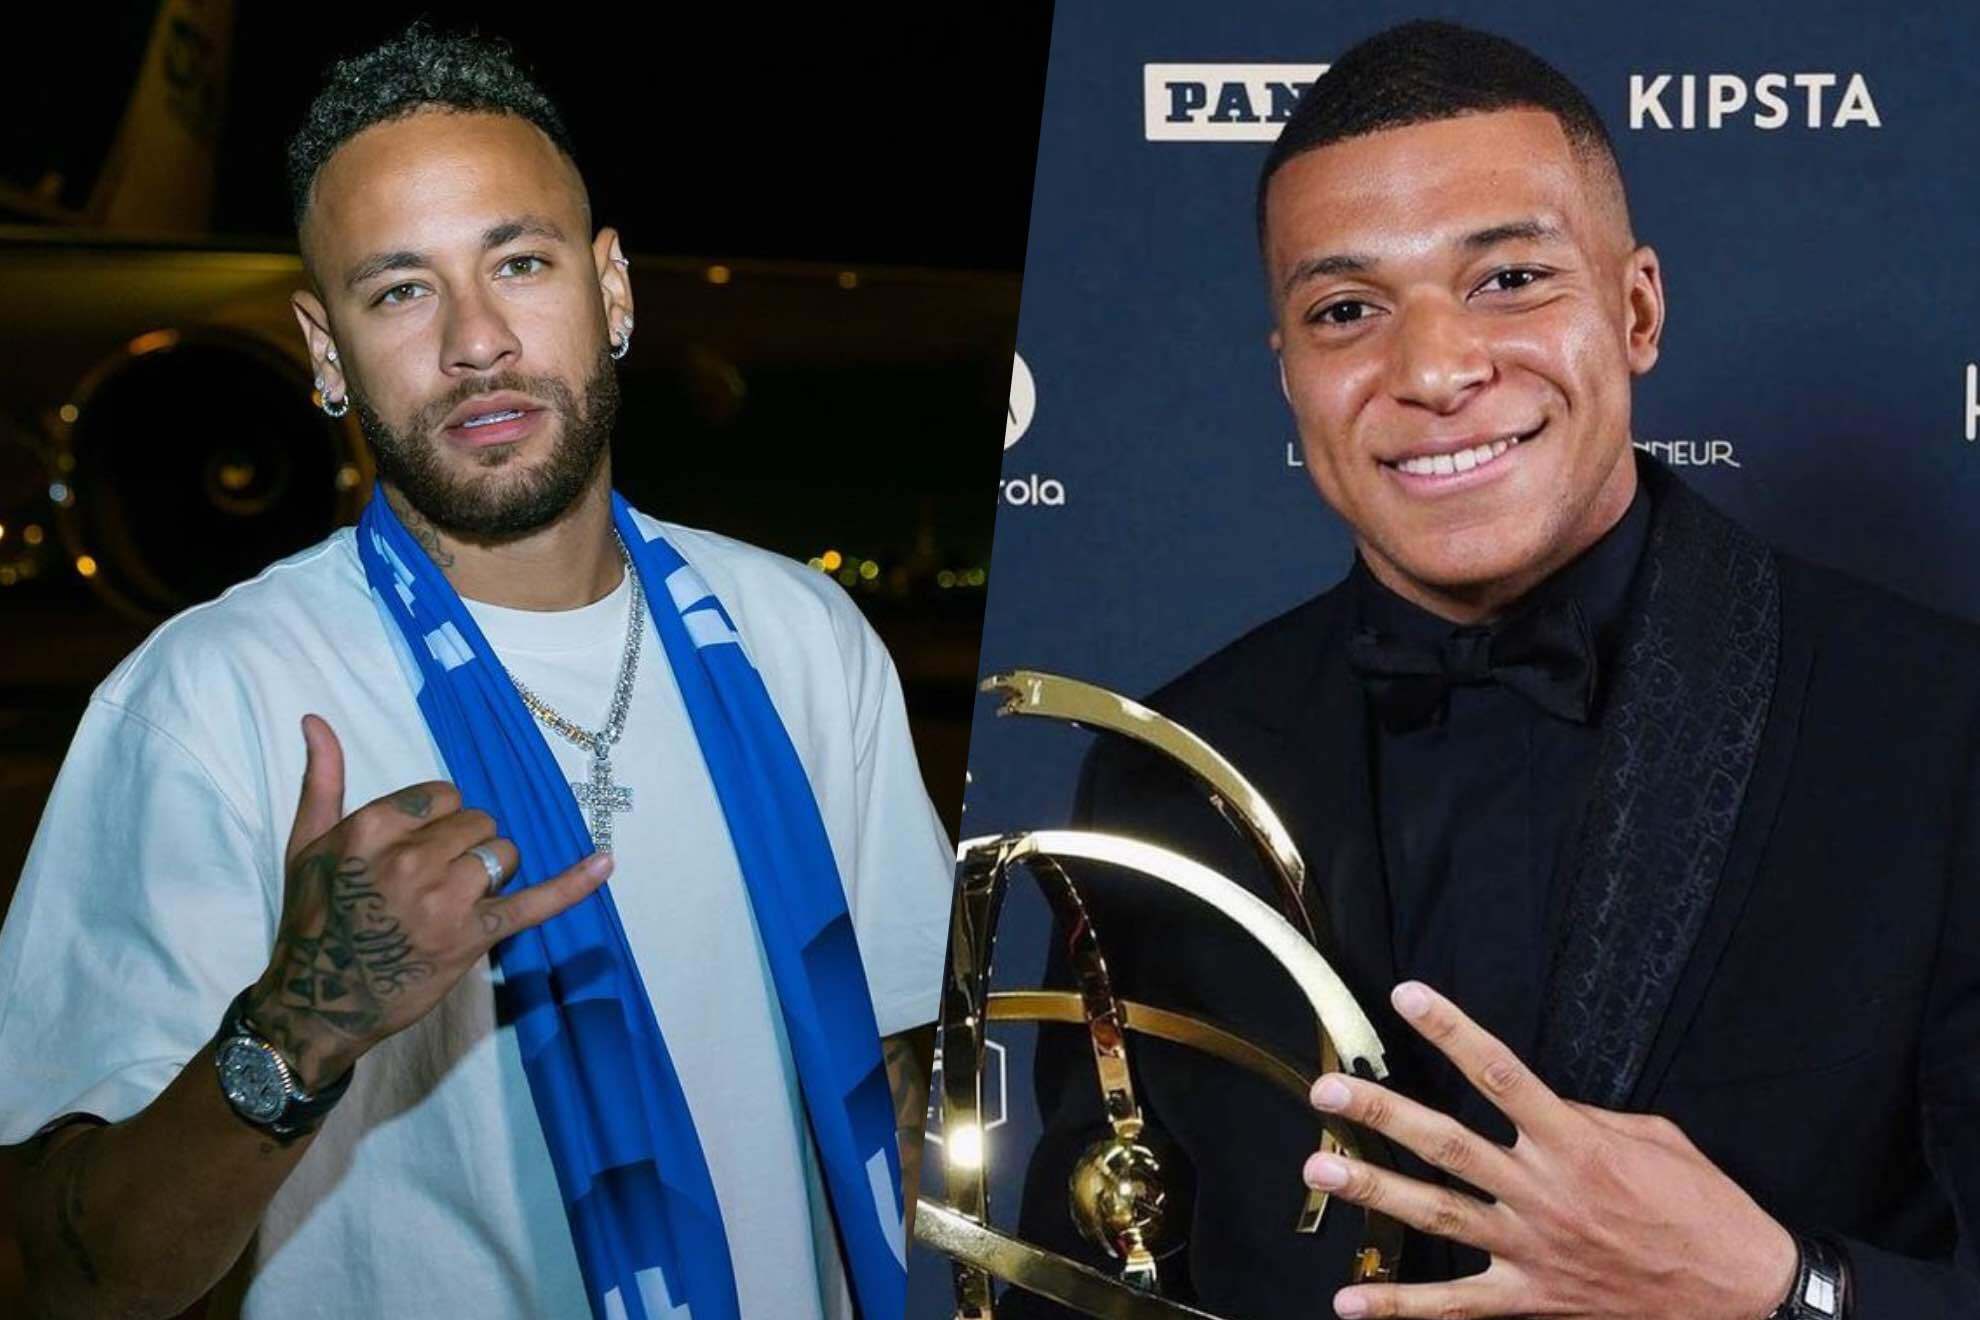 Neymar and Mbappe's Instagram drama